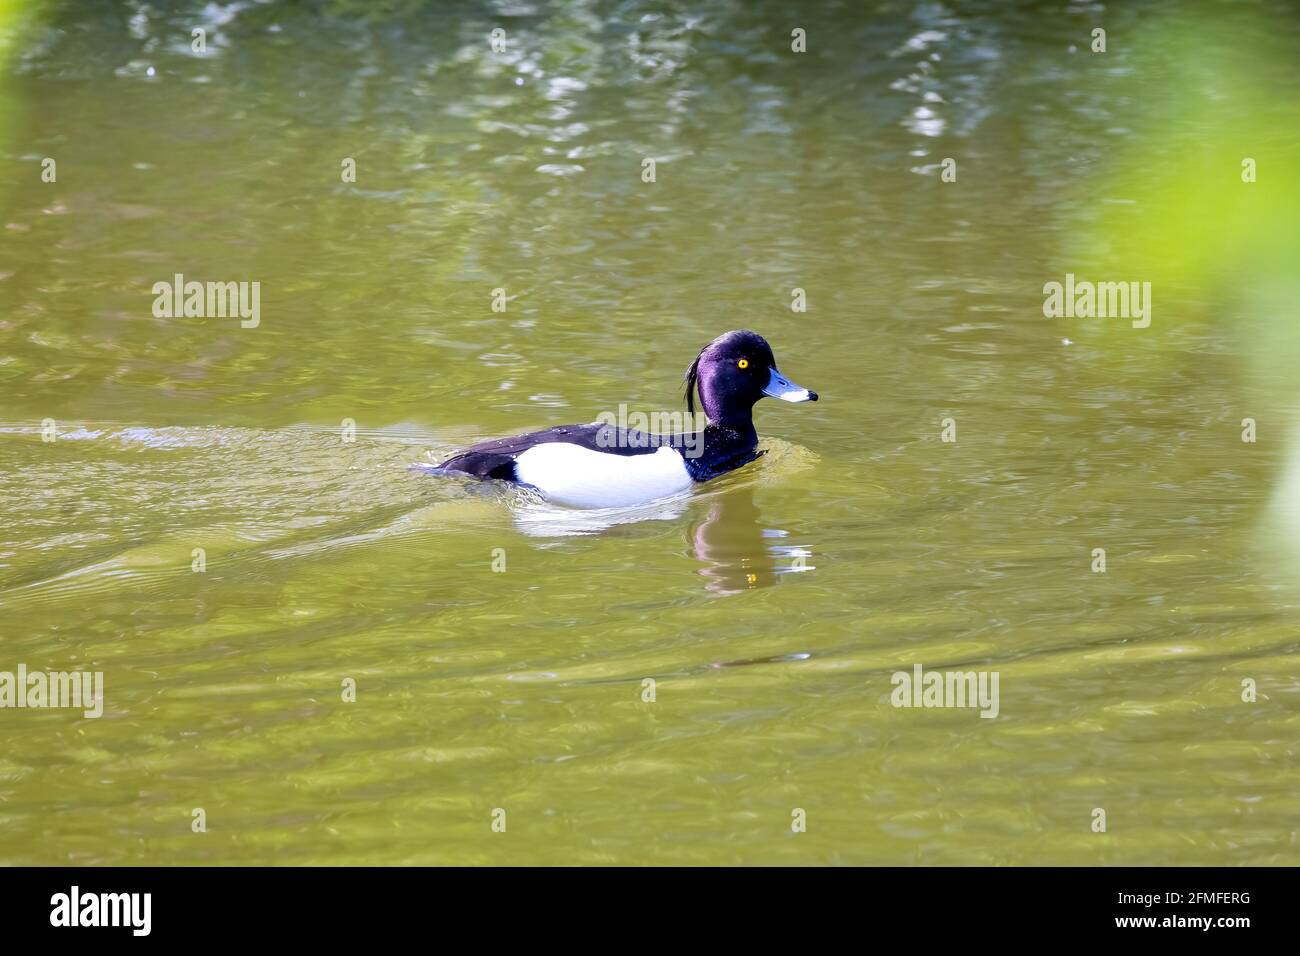 Un pato tufted nadando en un lago verde Foto de stock